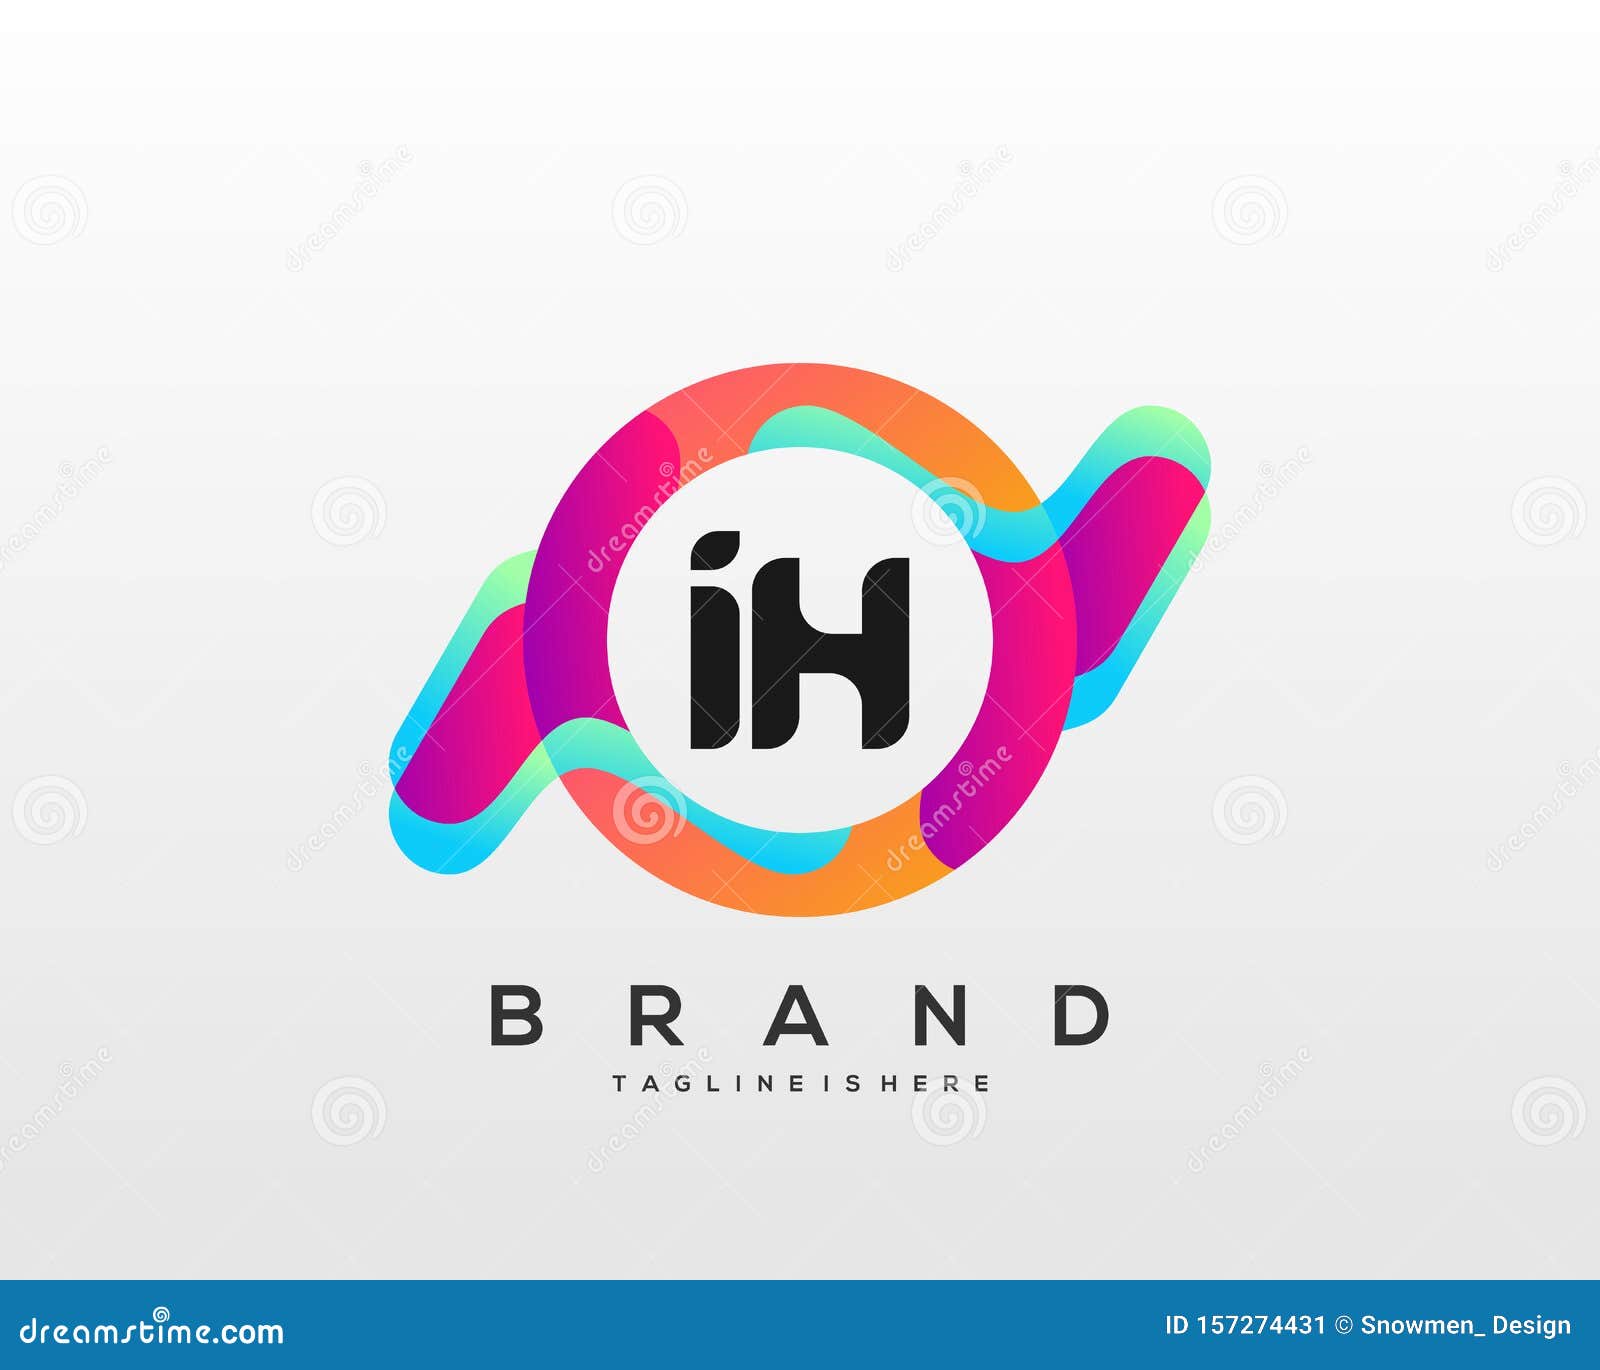 Download Free I H Logo Design PSD Mockup Template